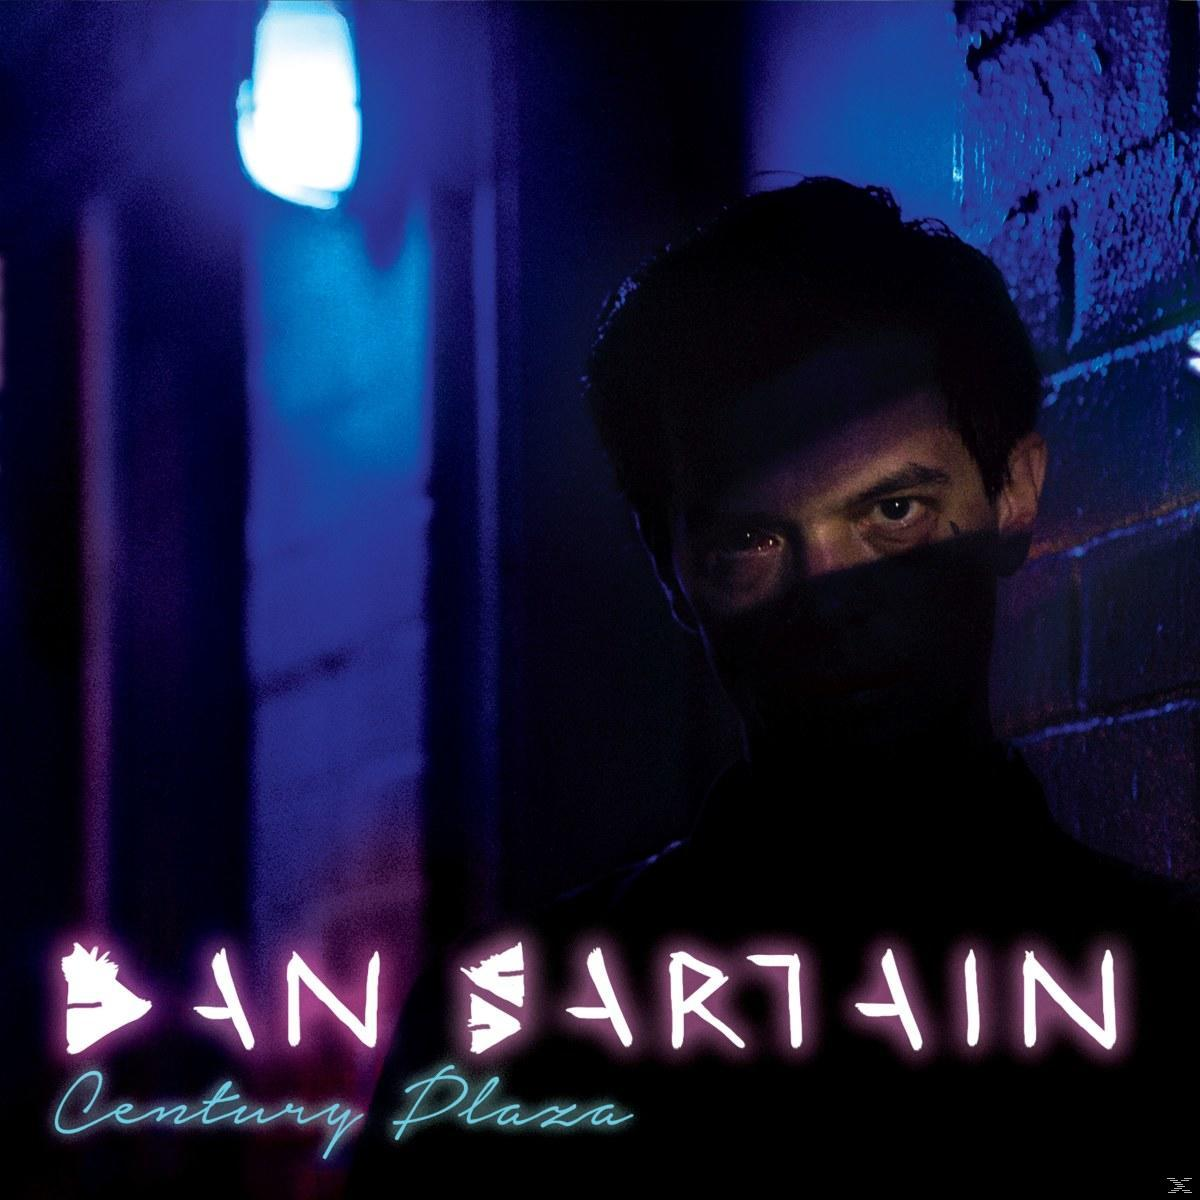 Dan Sartain - Century Plaza (Vinyl) 